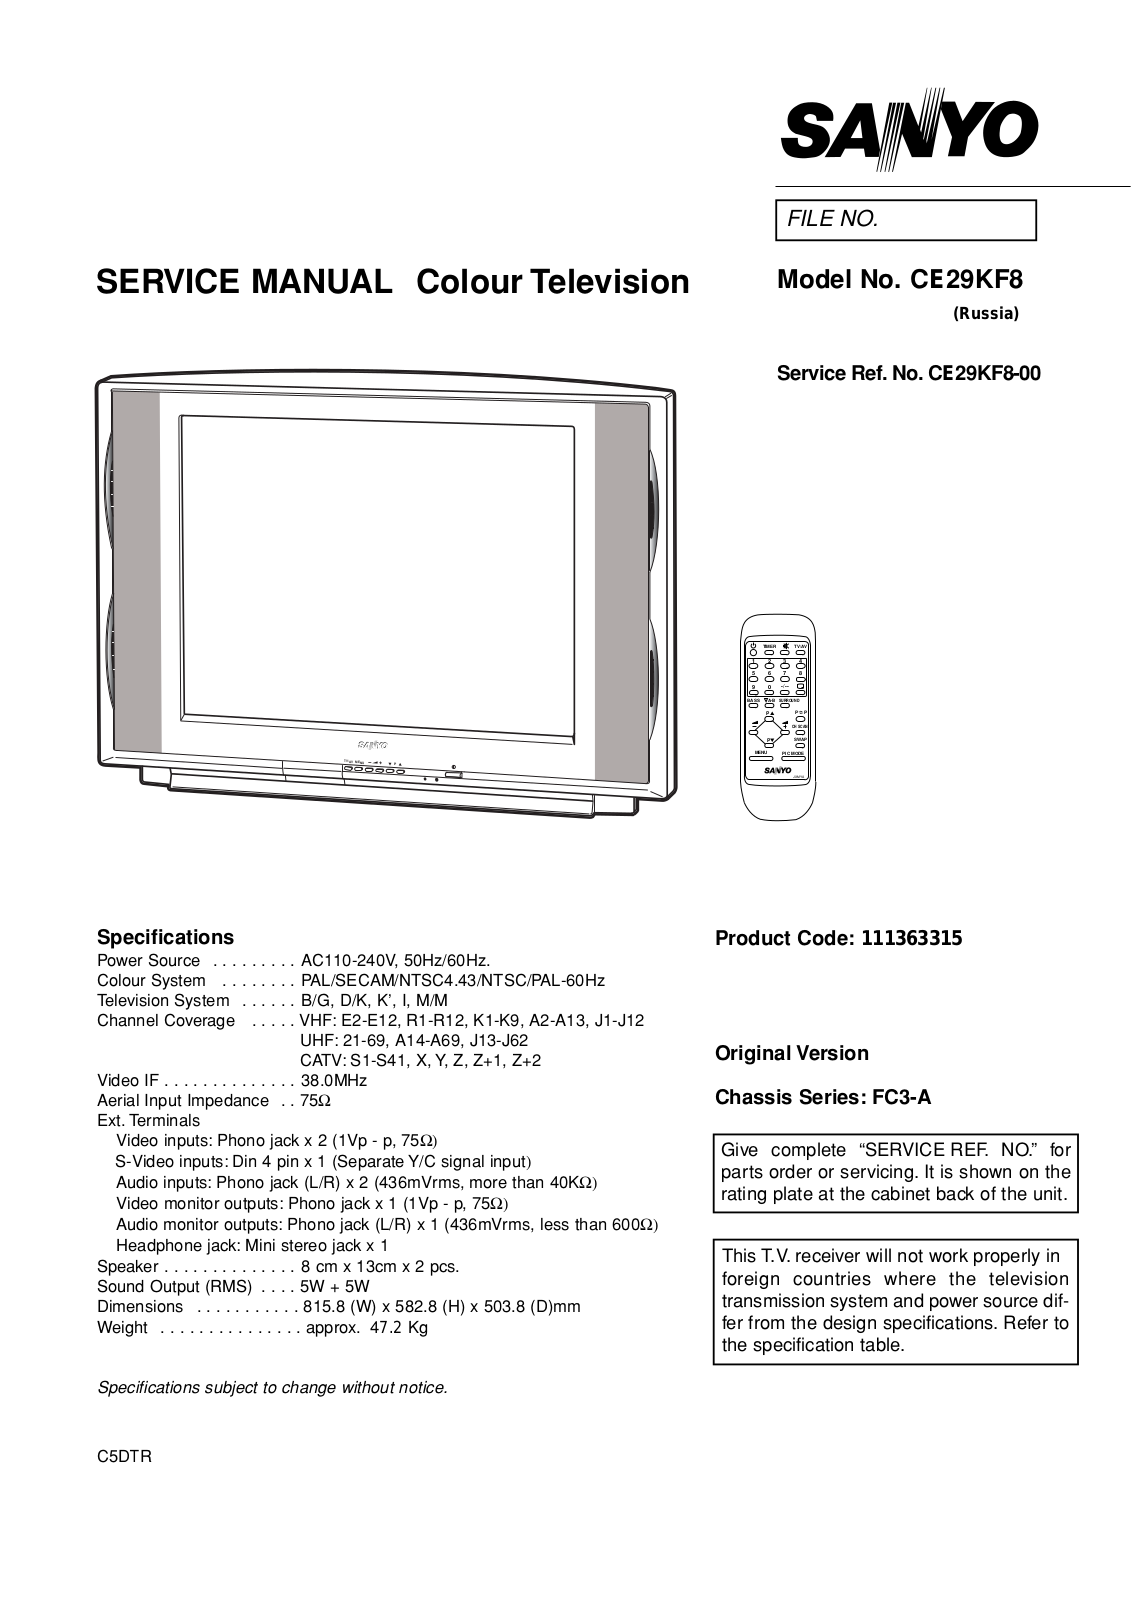 SANYO CE29KF8 Service Manual